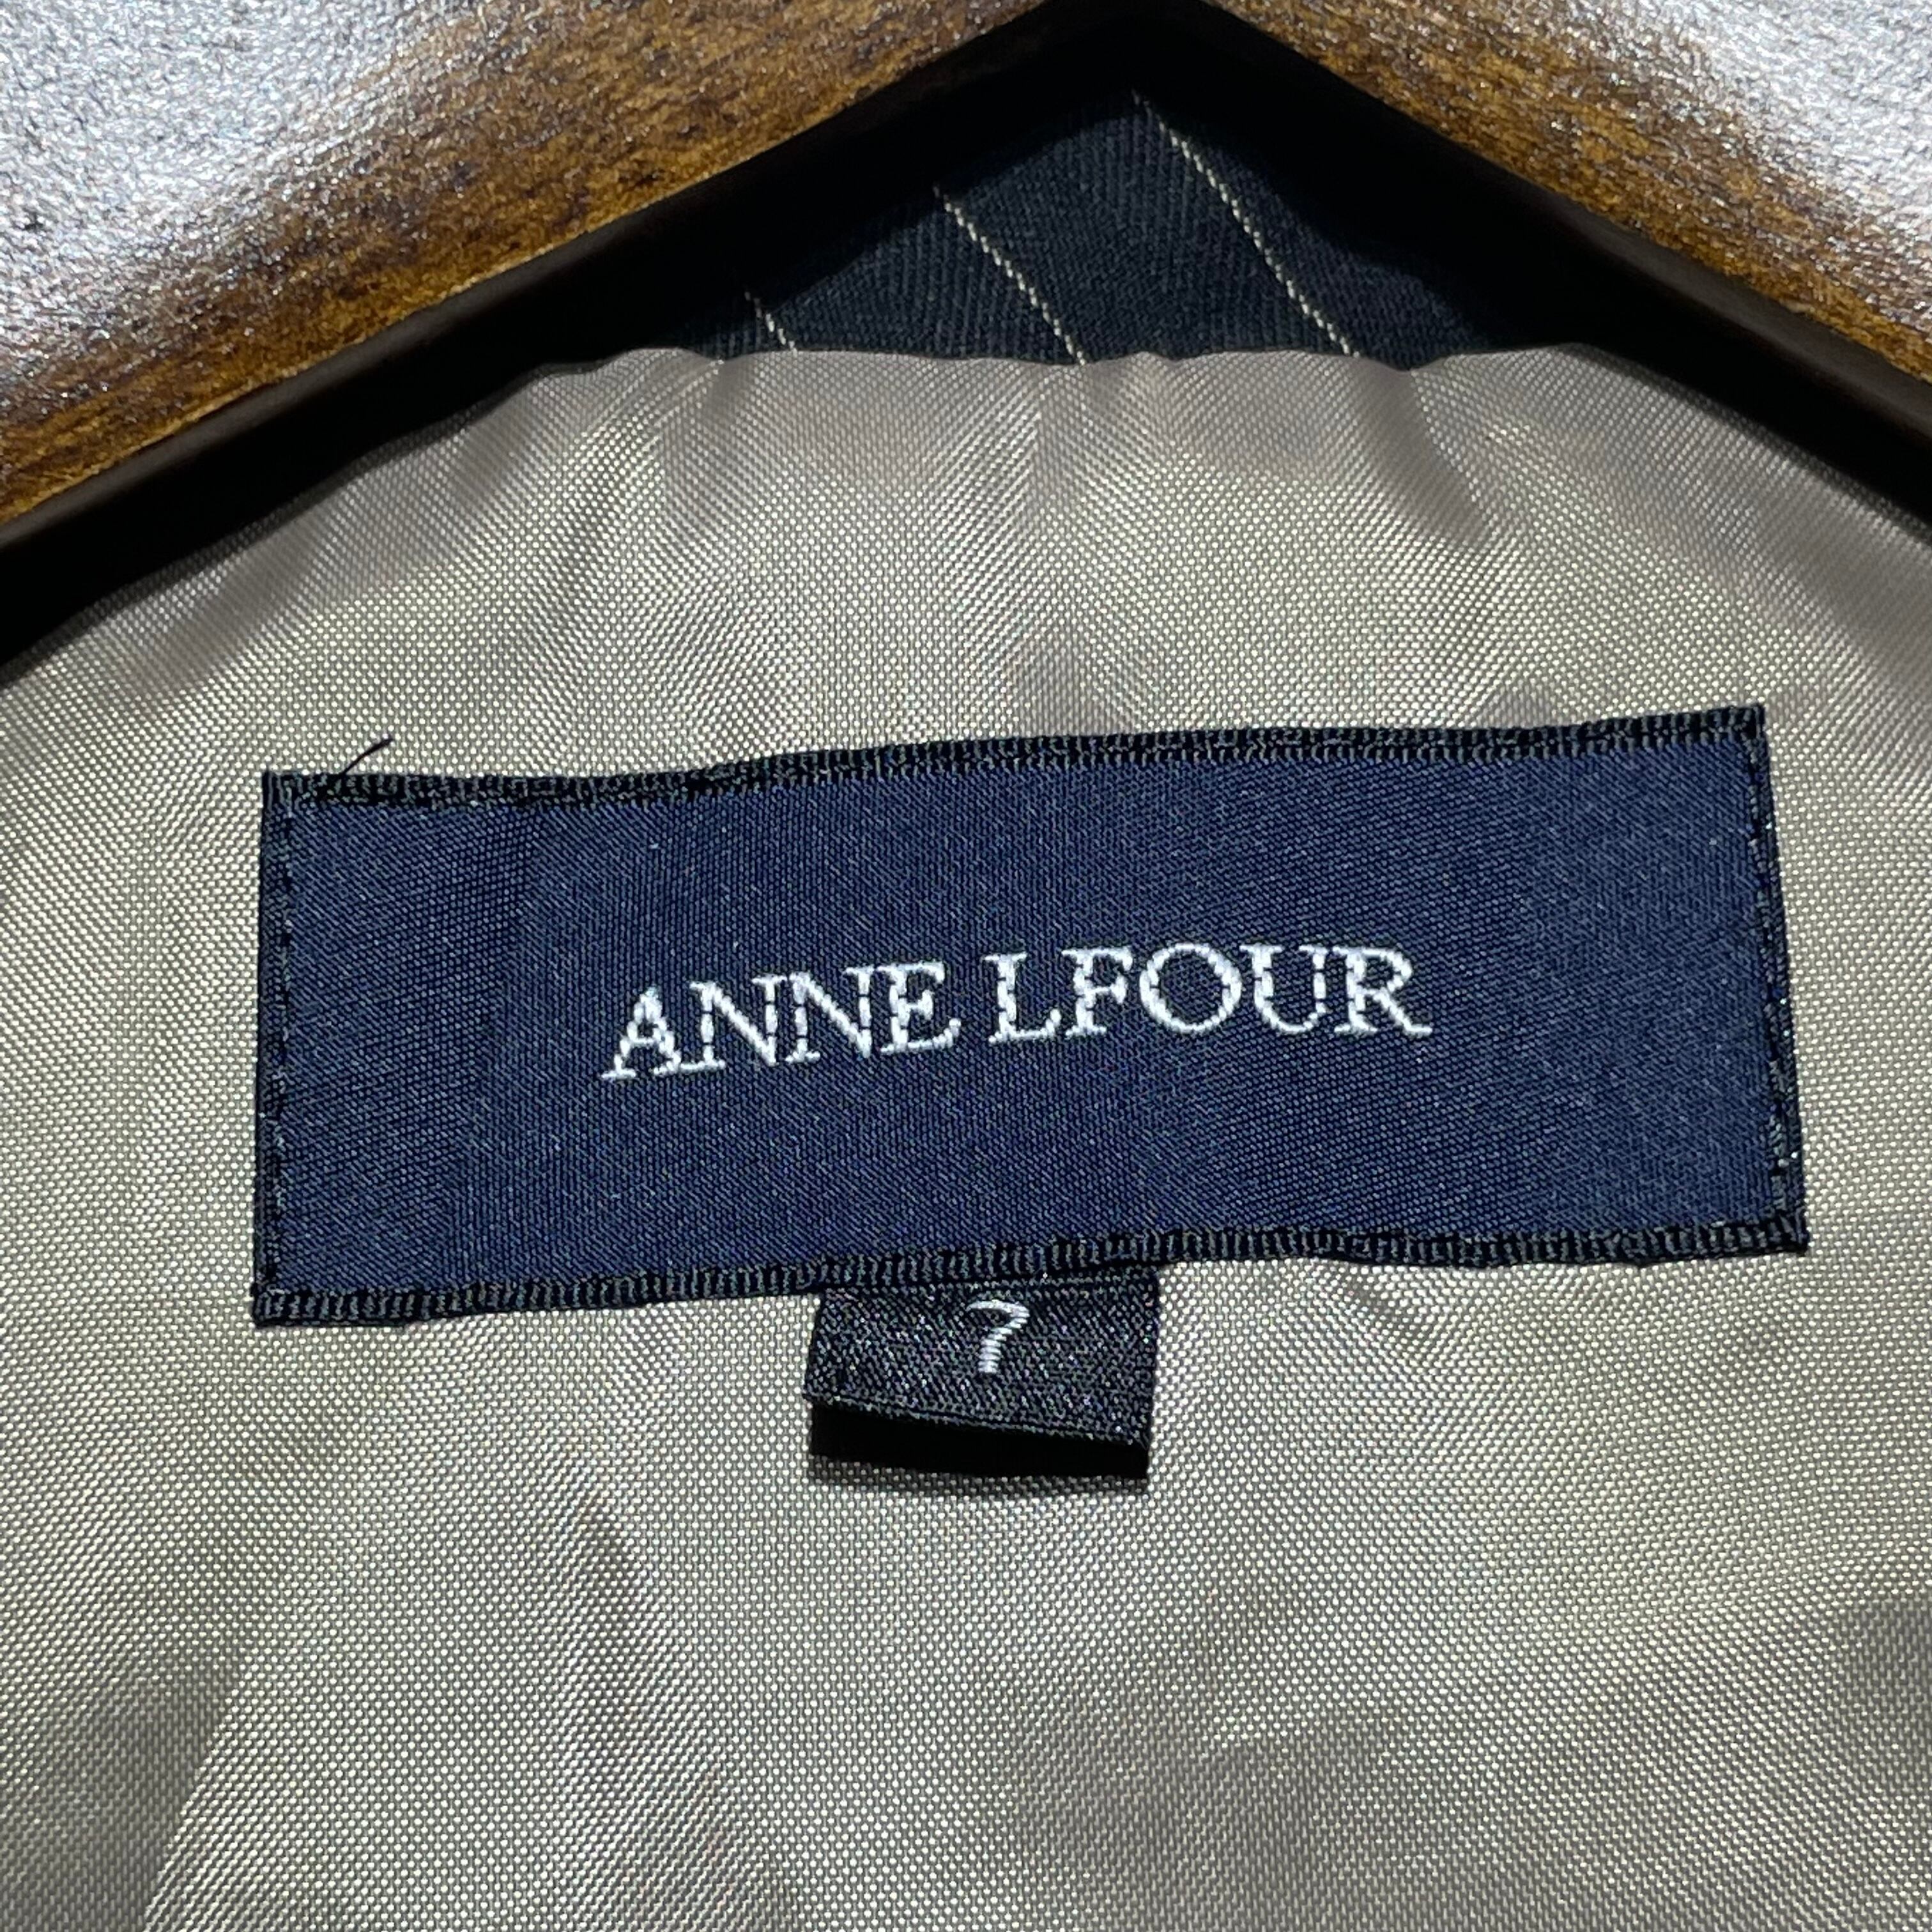 ANNE LFOUR スーツ セットアップ パンツ スカート size 7